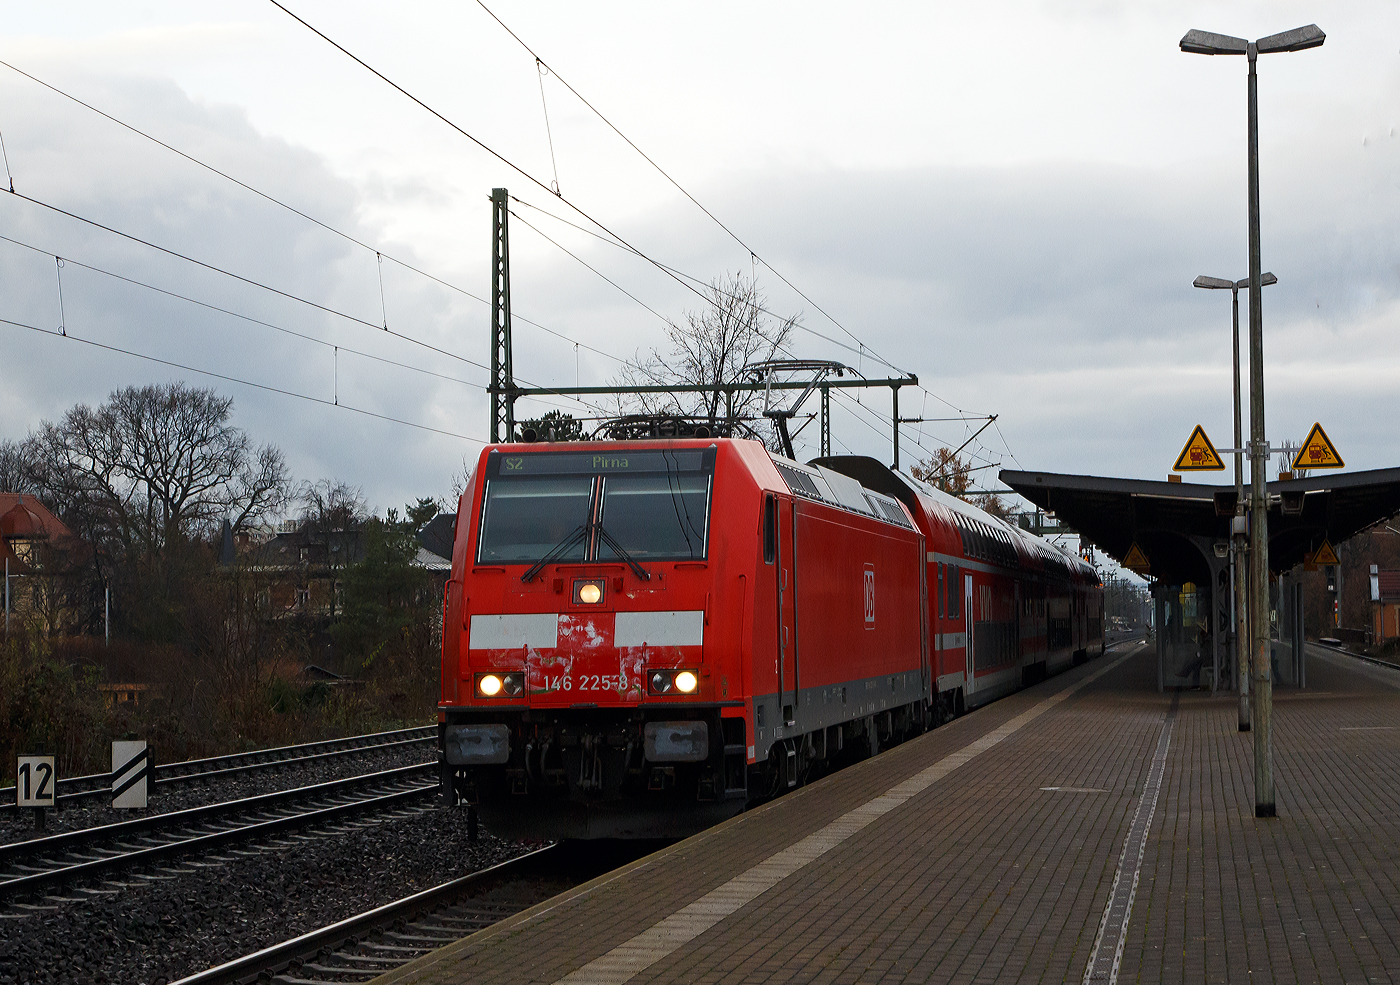 Die 146 225-9 (91 80 6146 225-8 D-DB) der DB Regio AG Südost, mit drei Doppelstock-Wagen, verlässt am 07.12.2022 als S 2 (Dresden Flughafen – Pirna) der S-Bahn Dresden den Bahnhof Dresden-Strehlen in Richtung Pirna.

Die Die TRAXX P160 AC2 wurde 2006 von Bombardier Transportation GmbH in Kassel unter der Fabriknummer 34076 gebaut.

Die S-Bahn Dresden ist ein wesentlicher Teil des Angebots im Öffentlichen Personennahverkehr in Dresden und im Ballungsraum Dresden. Sie wird im Auftrag des Verkehrsverbundes Oberelbe (VVO) von der DB Regio Südost mit derzeit vier Linien auf einem Streckennetz von 166 Kilometern Länge betrieben. 

Eingesetzt werden Lokomotiven bespannte Doppelstock-Wendezüge. Alle Züge verfügen über die 1. und 2. Wagenklasse. Außerdem sind sie, wie bei S-Bahn-Betrieben der Deutschen Bahn AG üblich, als „S-Bahn Dresden“ gekennzeichnet. Der Einsatz von Doppelstockwagen bei einer S-Bahn ist ungewöhnlich, da der Fahrgastwechsel bei einstöckigen Wagen im üblichen etwas schneller vonstattengeht.

Ab 16. Juli 2007 wurden schrittweise 53 neue Doppelstockwagen (13 Steuer- und 40 Mittelwagen) durch das Görlitzer Bombardier-Werk geliefert, die auf den Linien S 1 und S 3 zum Fahrplanwechsel am 9. Dezember 2007 die alten Doppelstockwagen ersetzten. Das Investitionsvolumen der bis zu 160 km/h schnellen Wagen belief sich auf 72 Millionen Euro.
 
Die Lokomotiven entstammen den Baureihen 143, 146.0 und 146.2. Der zwischenzeitliche Einsatz der Baureihe 182 endete im Dezember 2015. Zum Fahrplanwechsel im Dezember 2018 verfügte die S-Bahn Dresden über 20 Doppelstockwagen des Baujahrs 2003 und 53 Doppelstockwagen des Baujahrs 2007.

Das Netz der S-Bahn Dresden umfasst eine jährliche Leistung von 3,1 Millionen Zugkilometern. Es besteht aus folgenden Linien:
S 1 Meißen-Triebischtal – Coswig – Radebeul Ost – Dresden-Neustadt – Dresden Hbf – Heidenau  Pirna – Bad Schandau – Schöna
S 2 Dresden Flughafen – Dresden-Neustadt – Dresden Hbf (– Heidenau – Pirna)
S 3 Dresden Hbf – Freital-Hainsberg – Tharandt (– Klingenberg-Colmnitz – Freiberg)
S4 Dresden Hbf – Dresden-Neustadt – Radeberg – Pulsnitz – Kamenz